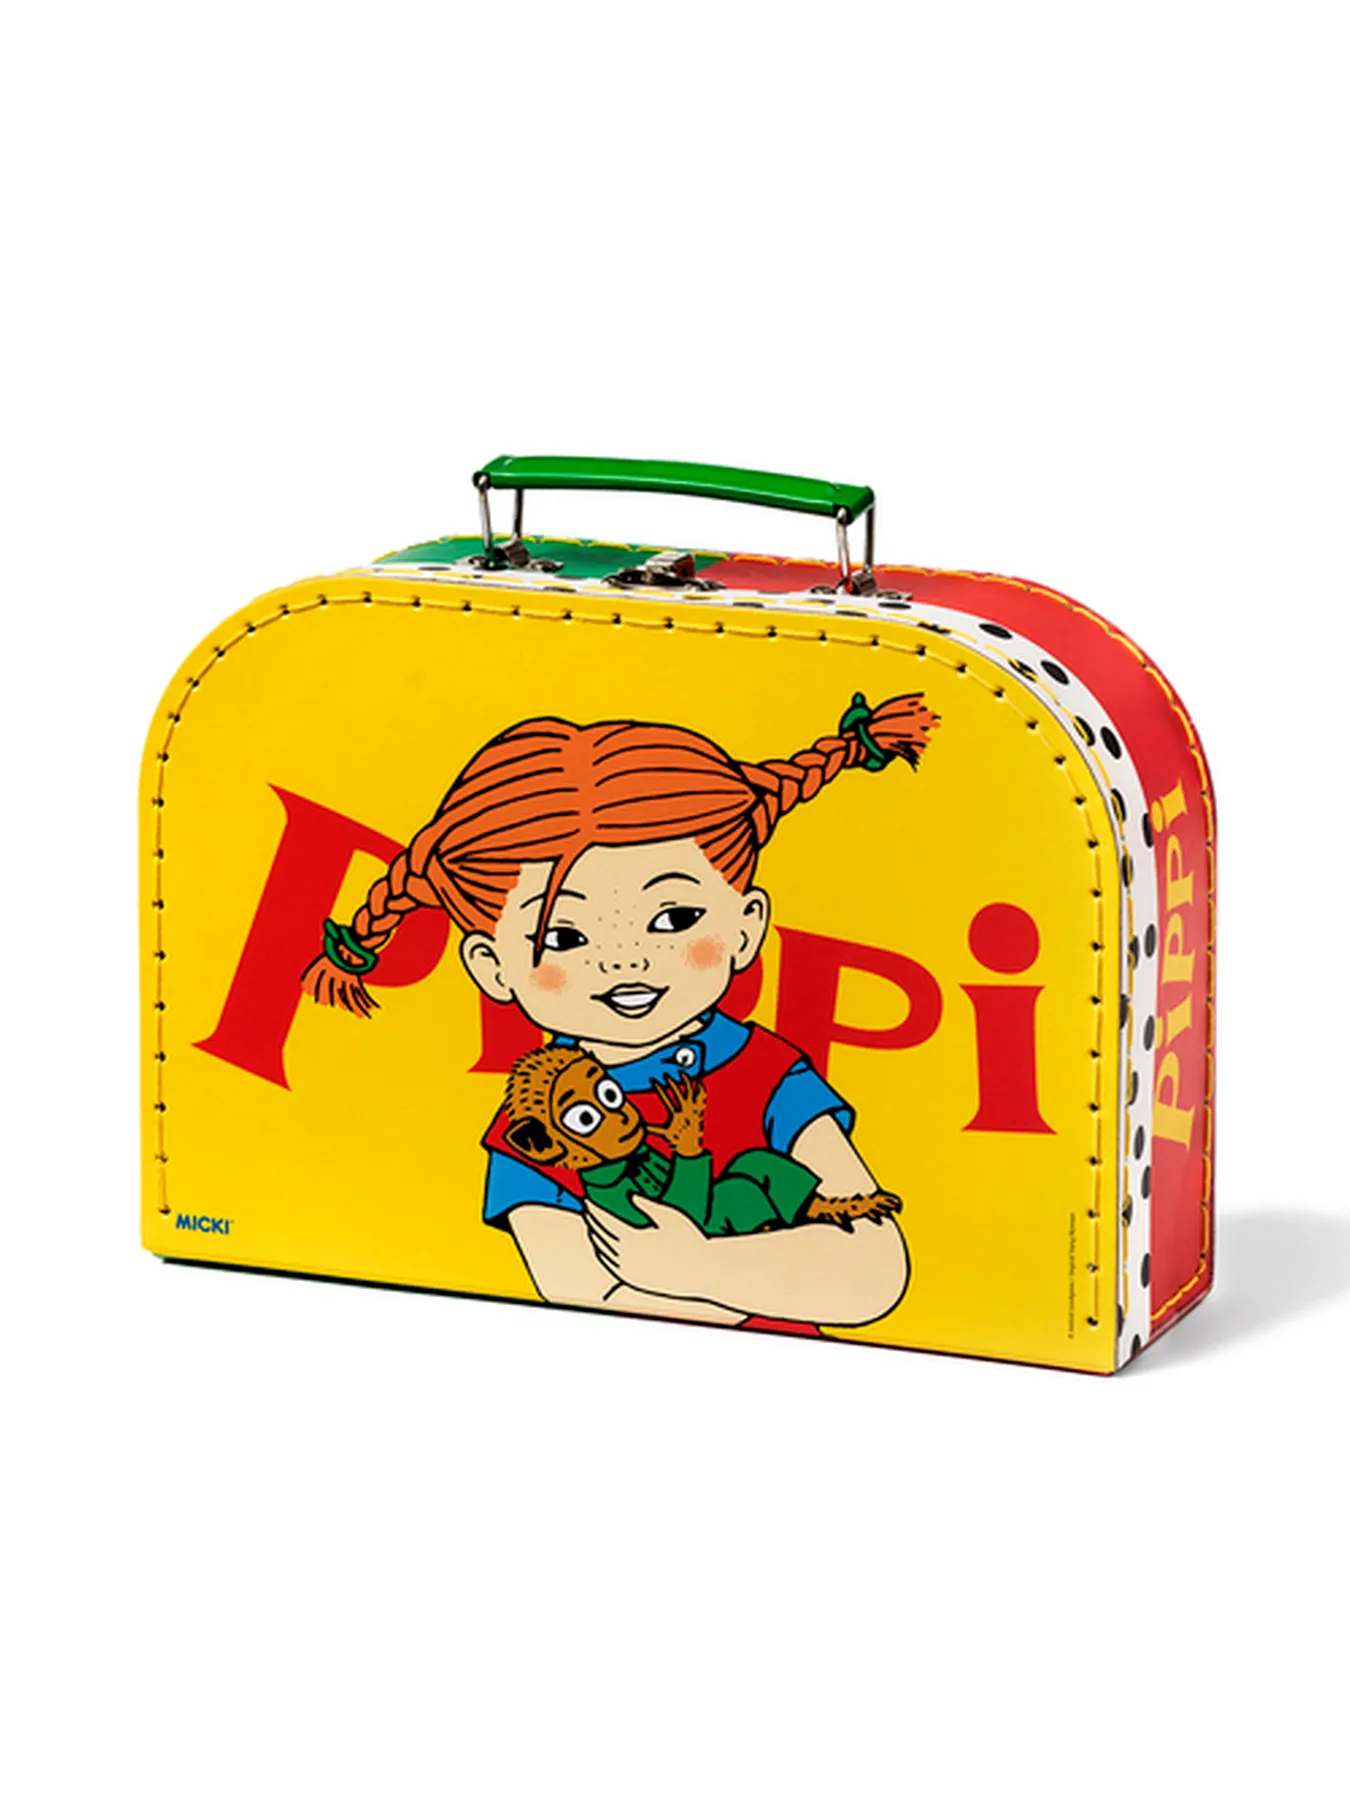 Resväska Pippi Långstrump 25 cm